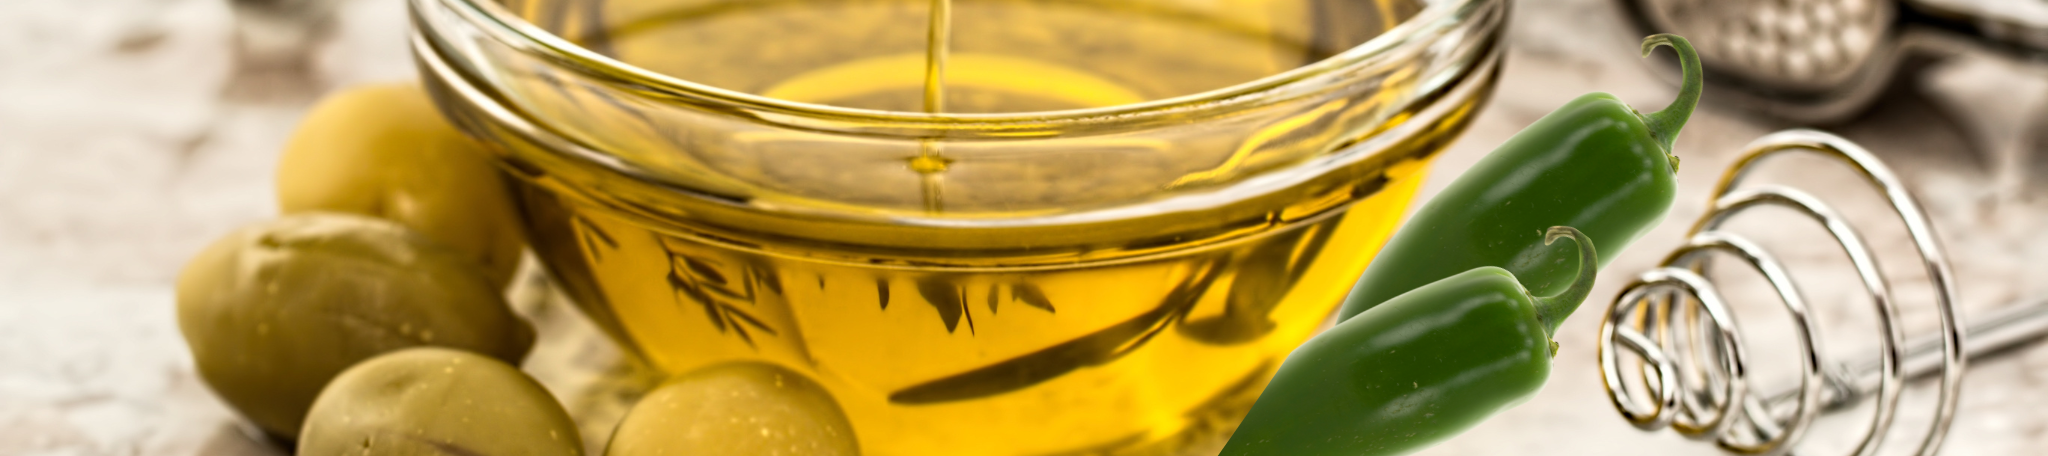 Fused & Infused Olive Oils